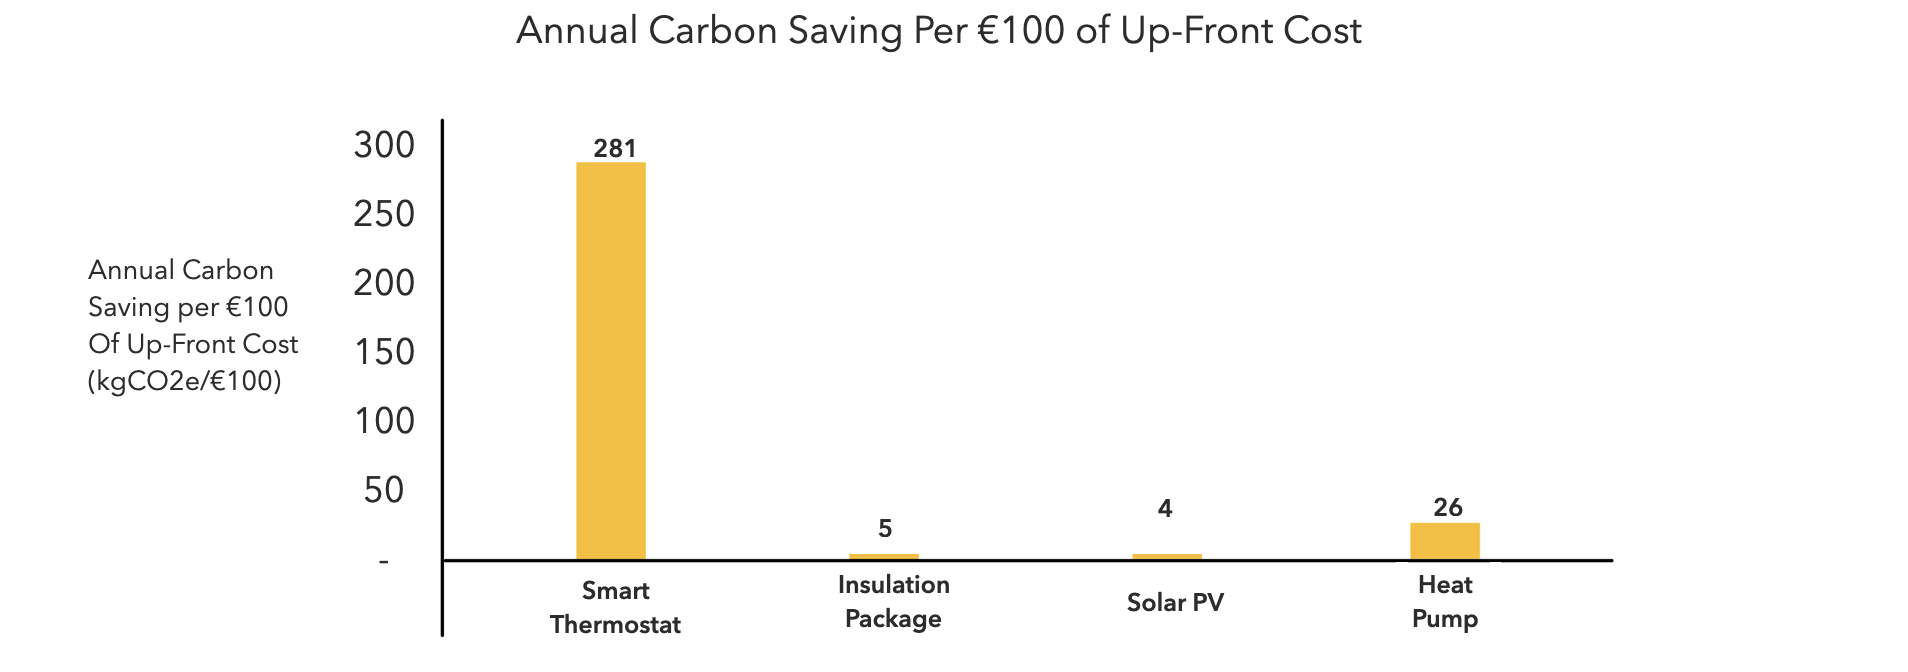 EN Annual Carbon Saving EUR